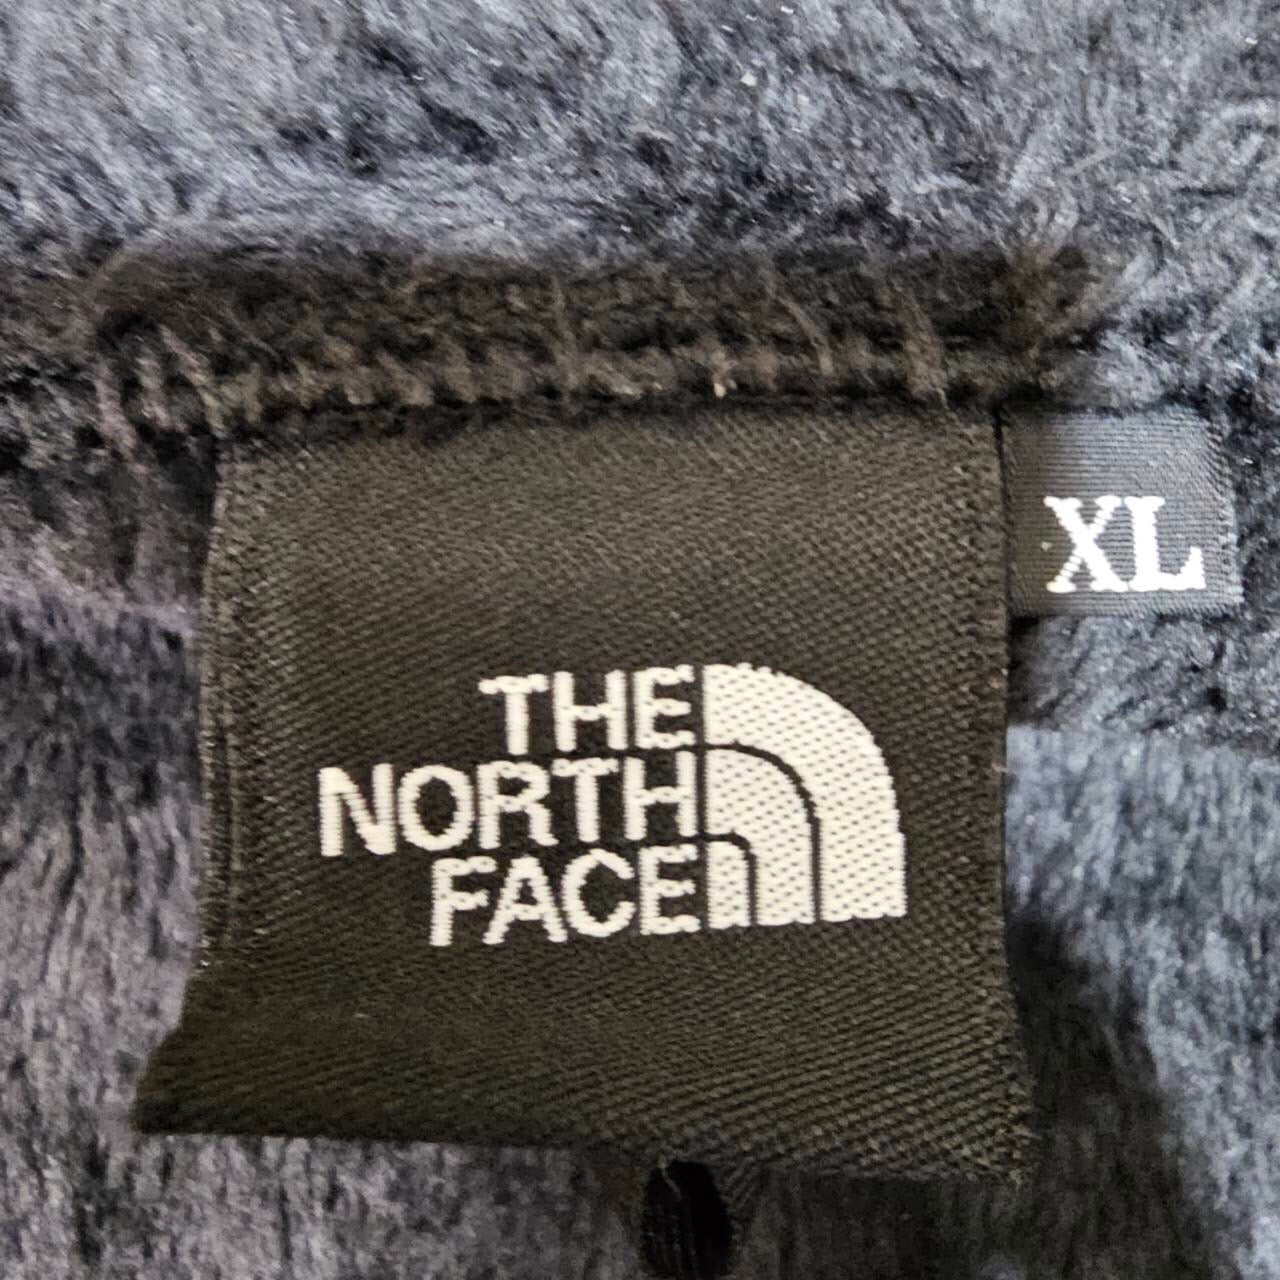 THE NORTH FACE(ザノースフェイス) Antarctica Versa Loft Jacket/アンタークティカバーサロフトジャケット/ロゴフリースジャケット NA61930 XL ブラック